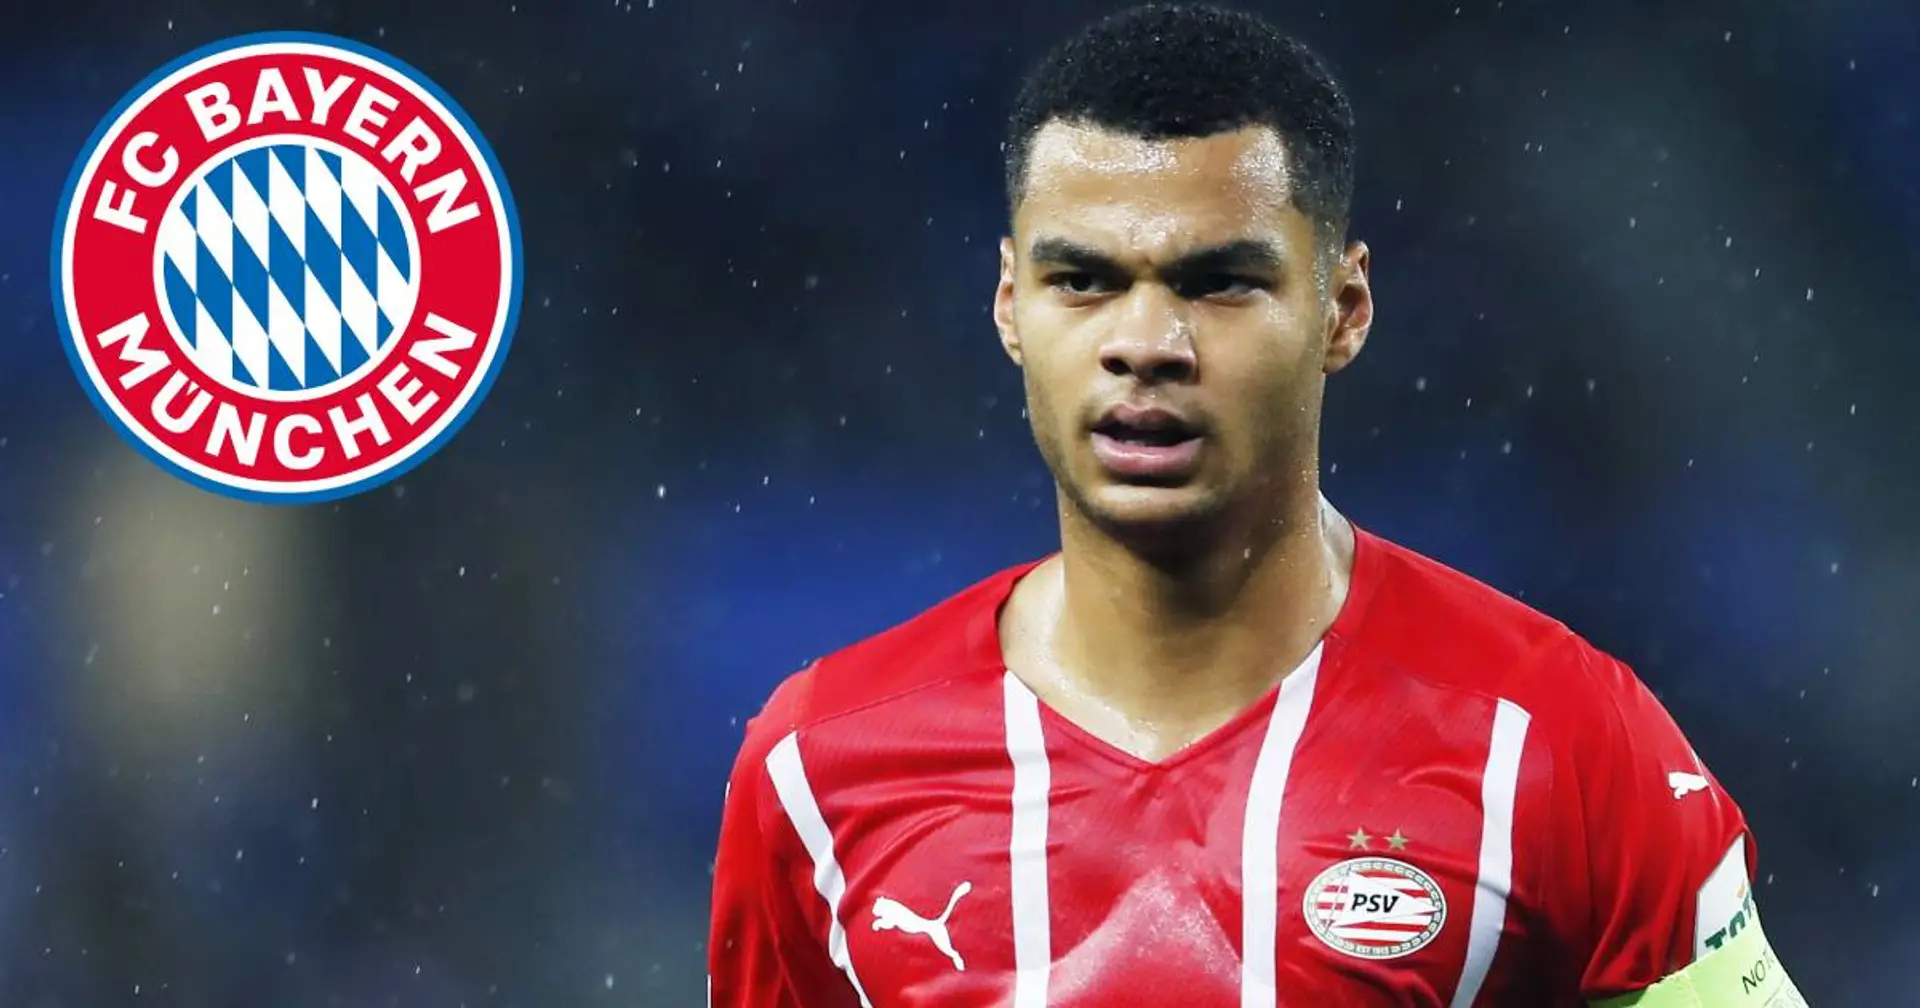 PSV-Star Gakpo will nicht zu Leeds United, sondern zu einem großen Klub wie Bayern - Top-Quelle